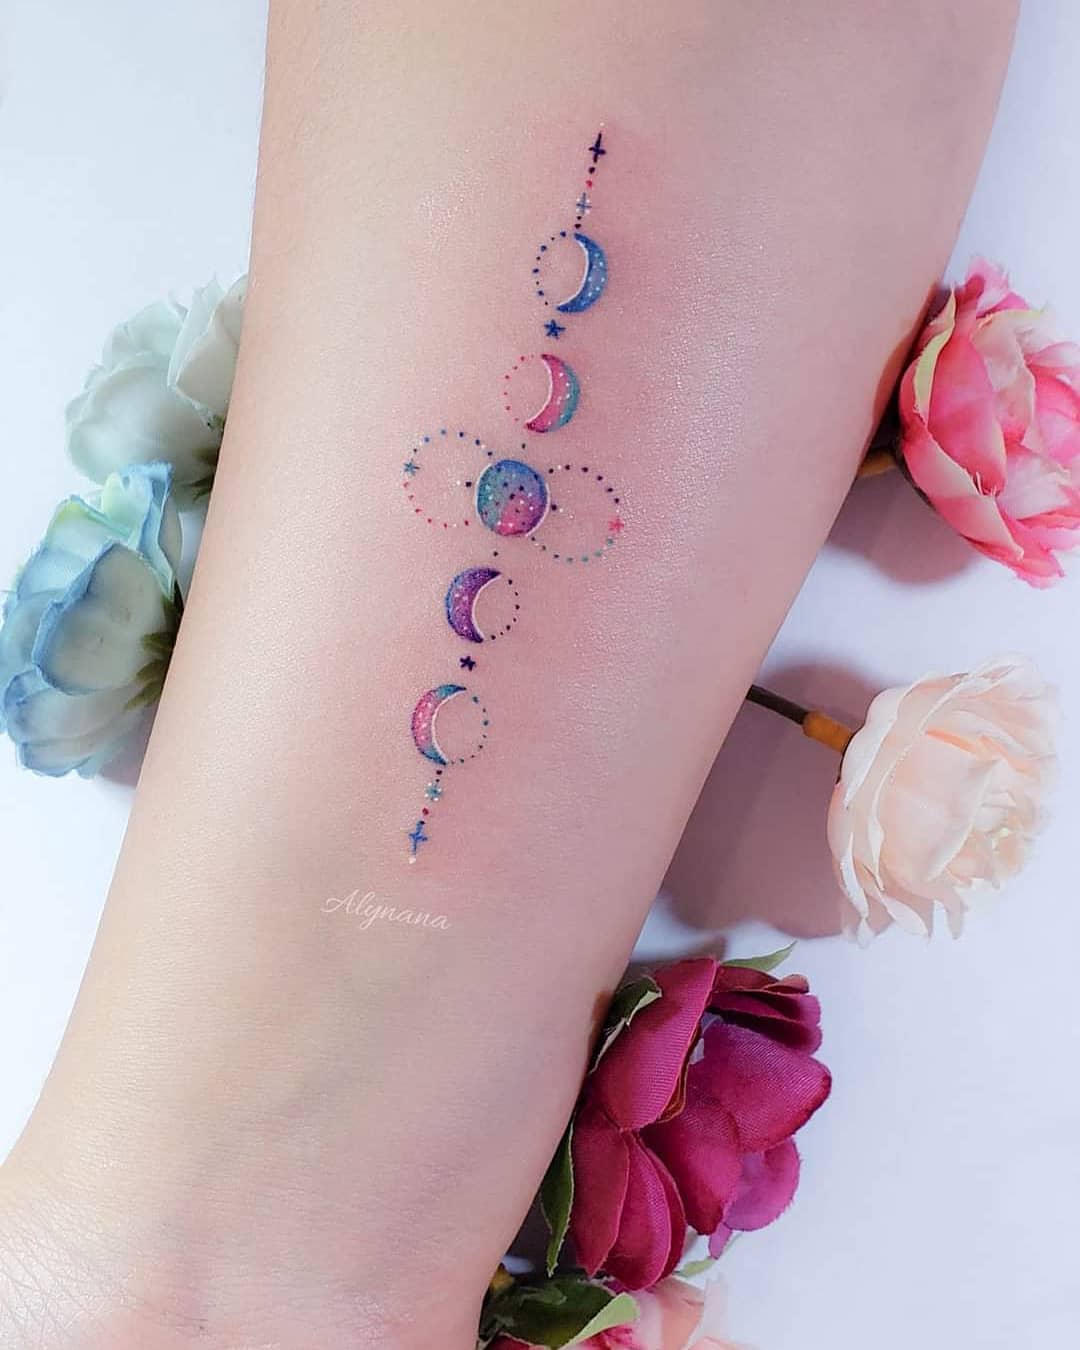 157 Artiste de tatouages colorés délicats Alynana Phases lunaires avec de petits points et des étoiles sur l'avant-bras